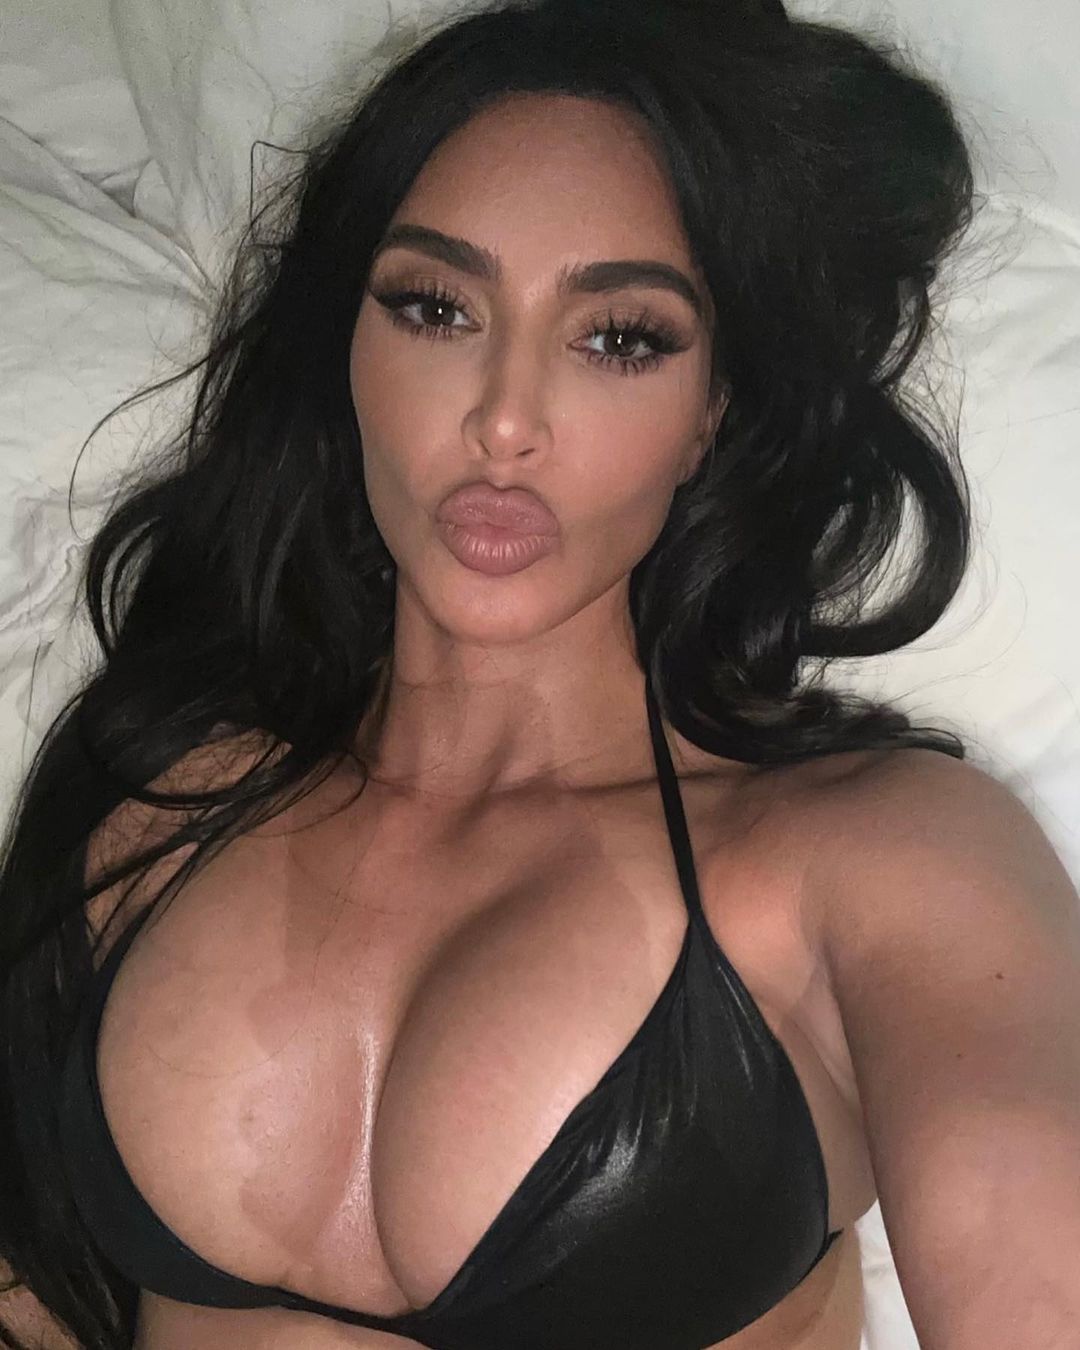 ABD'li yıldız Kim Kardashian, yatakta verdiği pozları sosyal medya hesabından yayınladı.
